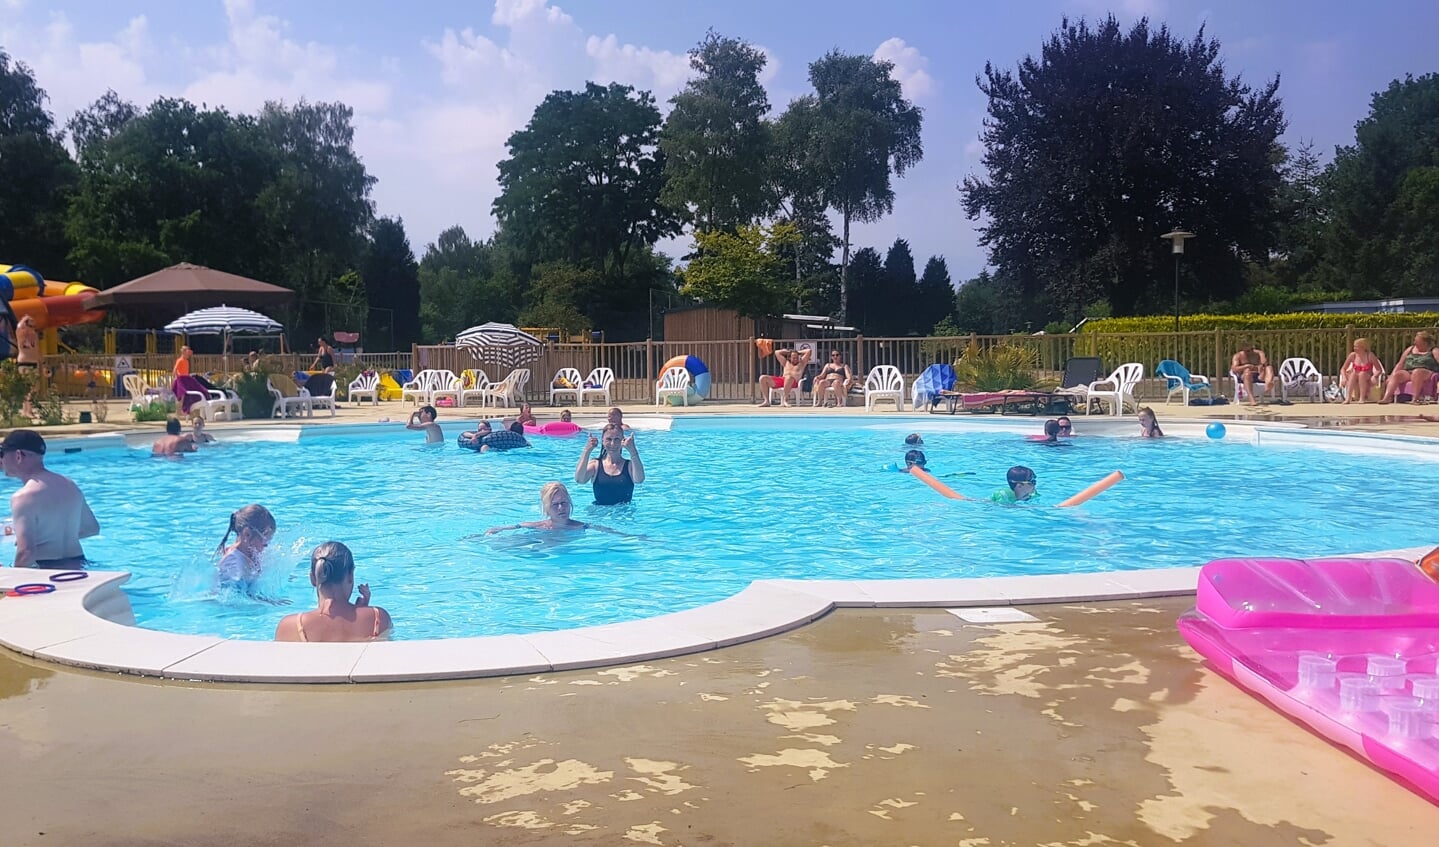 Genten met de hele familie in het zwembad op de camping in Voorthuizen.